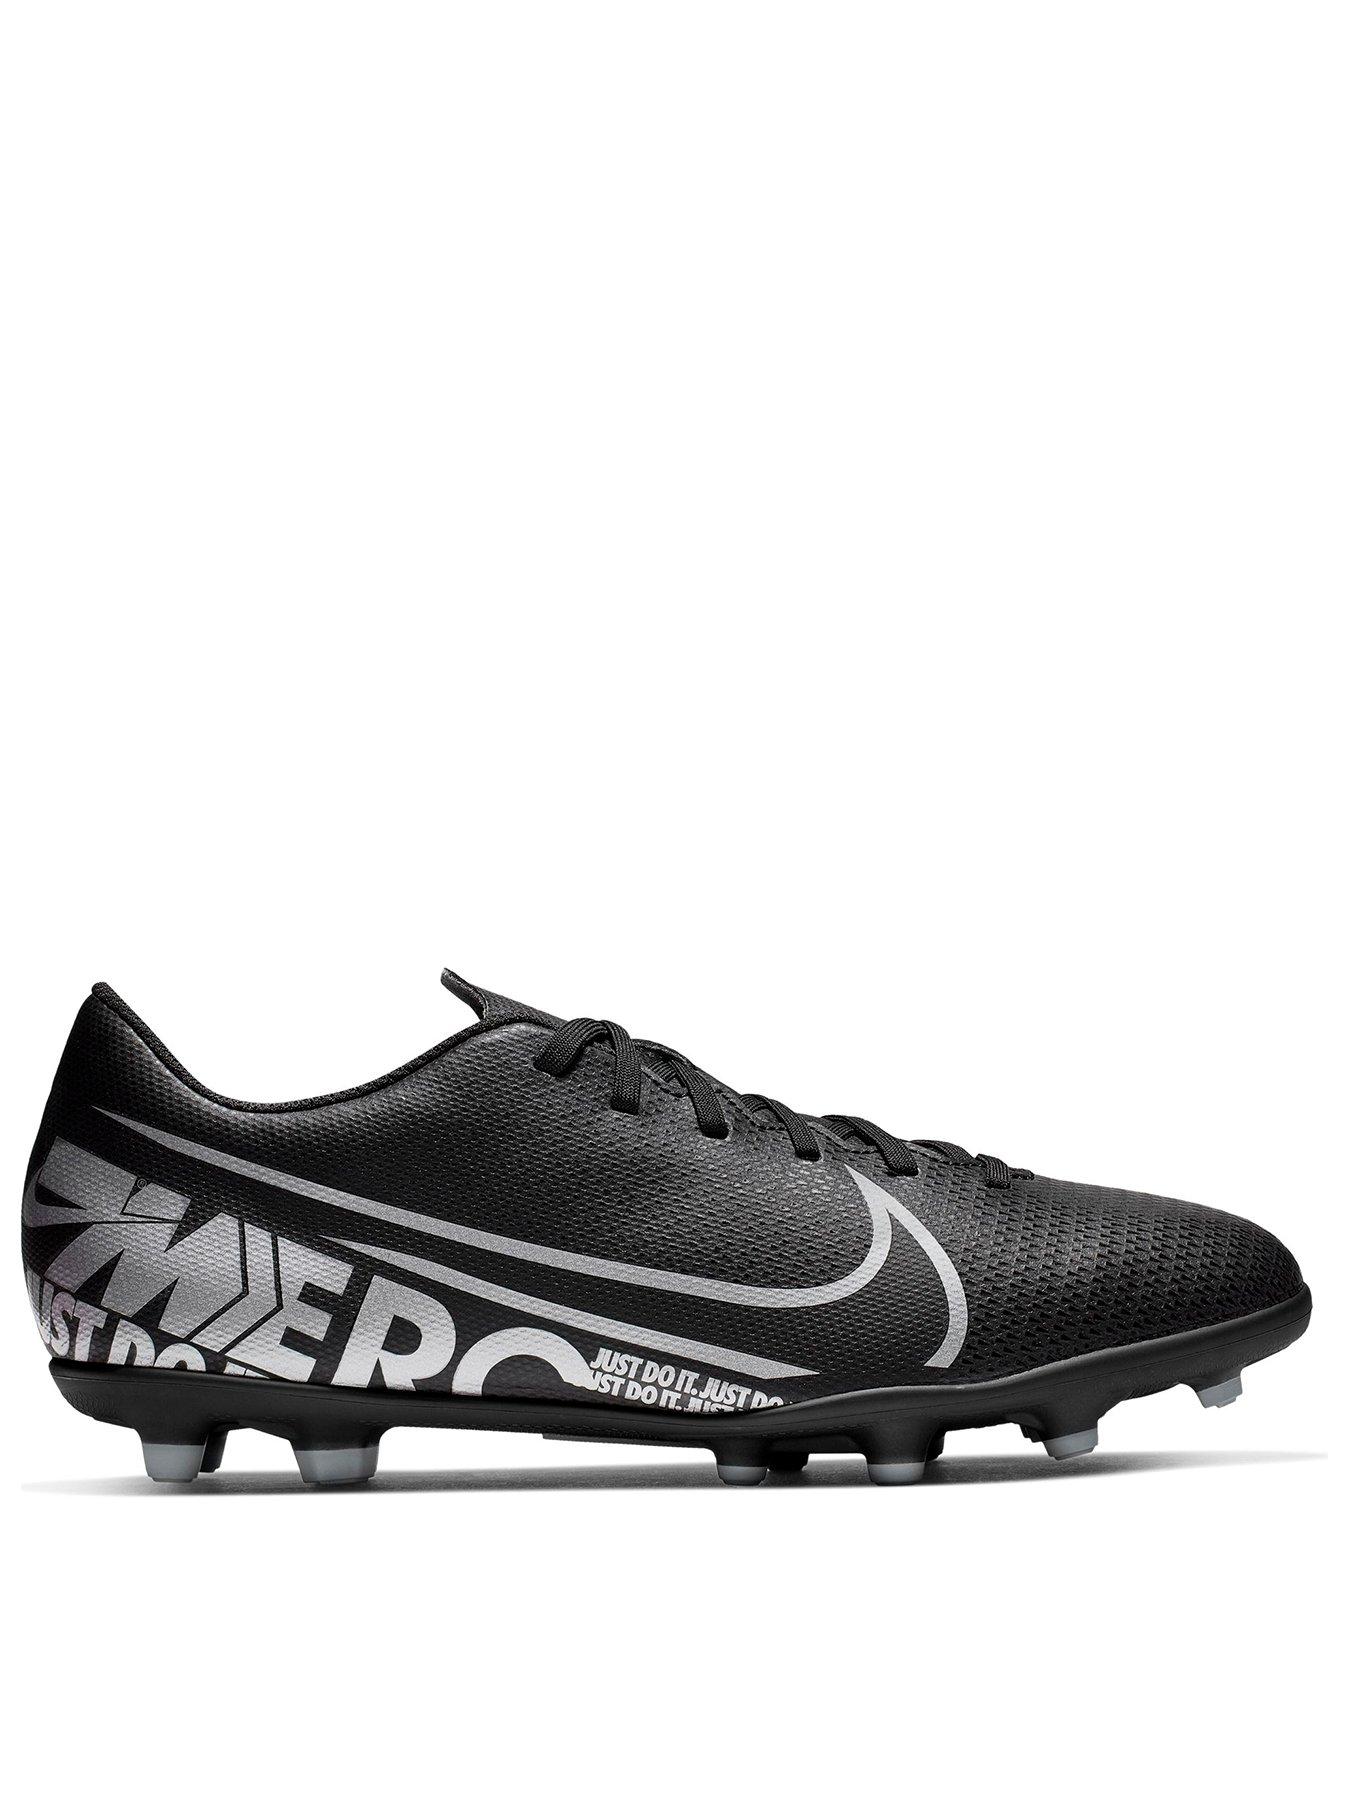 football boots vapor